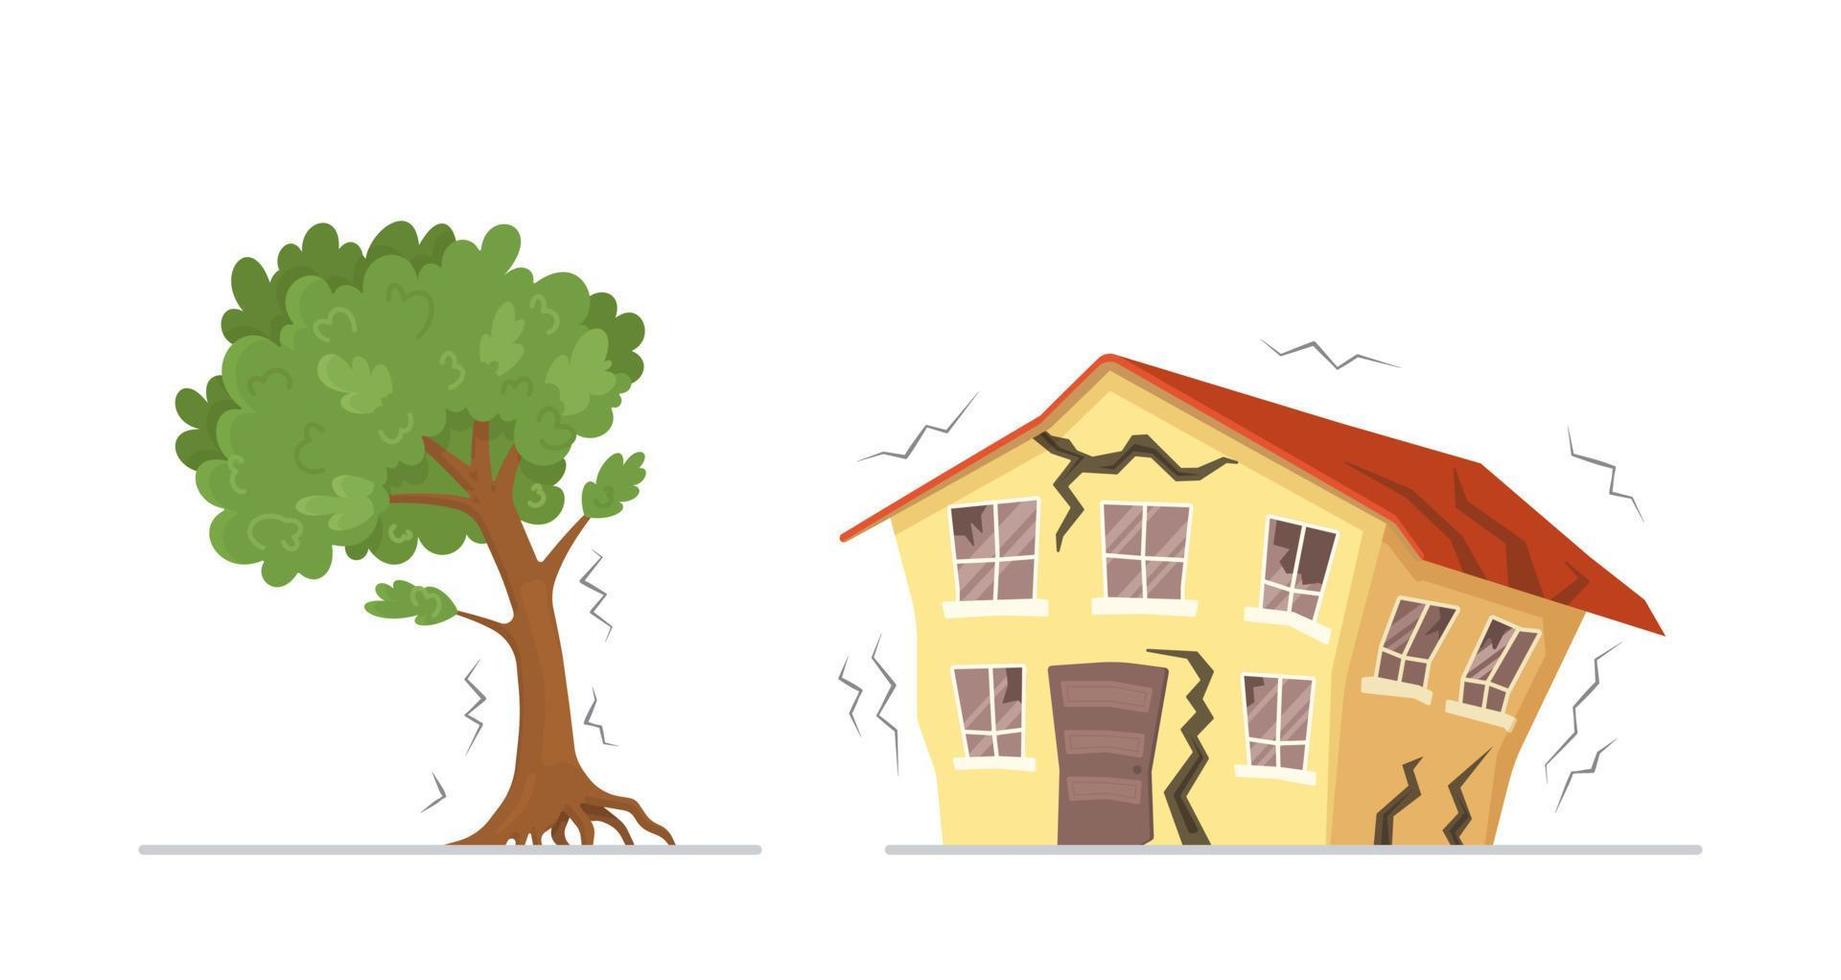 vektor illustration av de jordbävning. bruten gul hus och bruten träd från jordbävning isolerat på vit bakgrund.